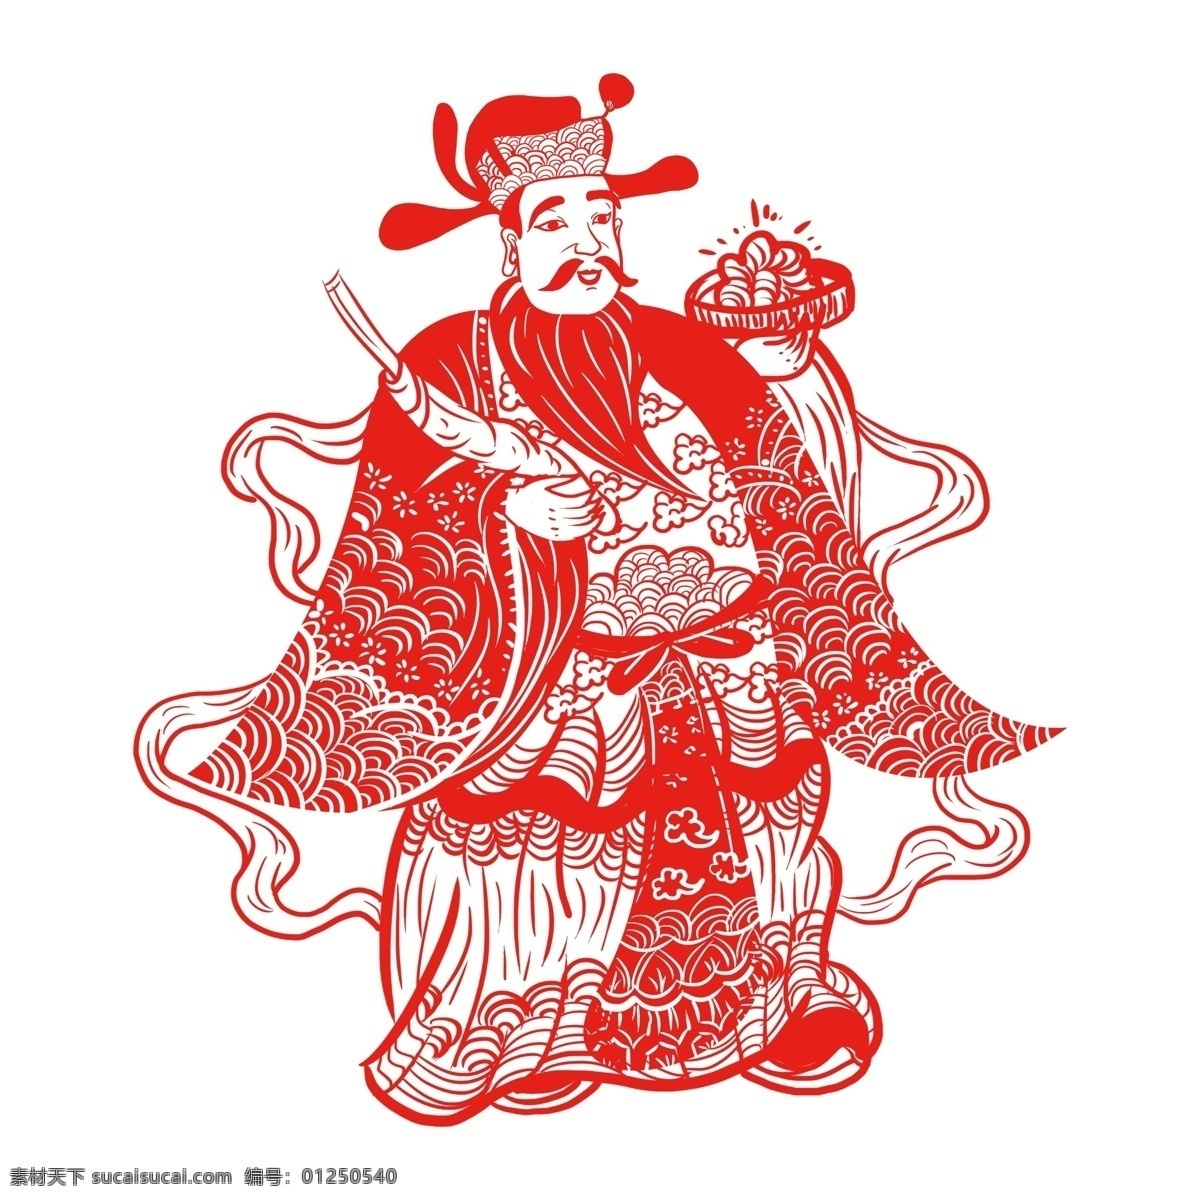 中国 风 装饰 财神爷 透明 节日元素 春节元素 免扣素材 卡通